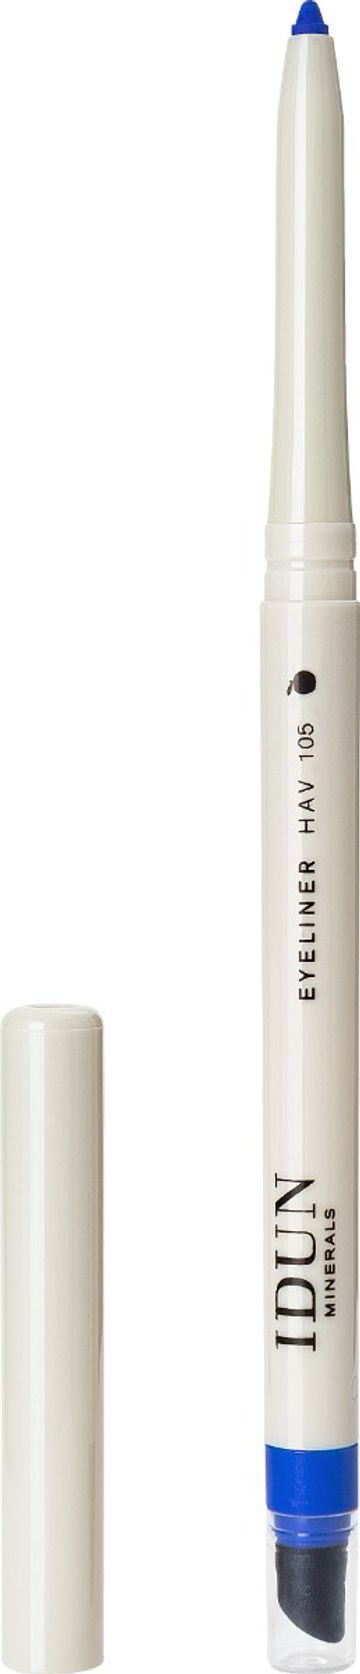 IDUN Minerals eyeliner pencil Hav